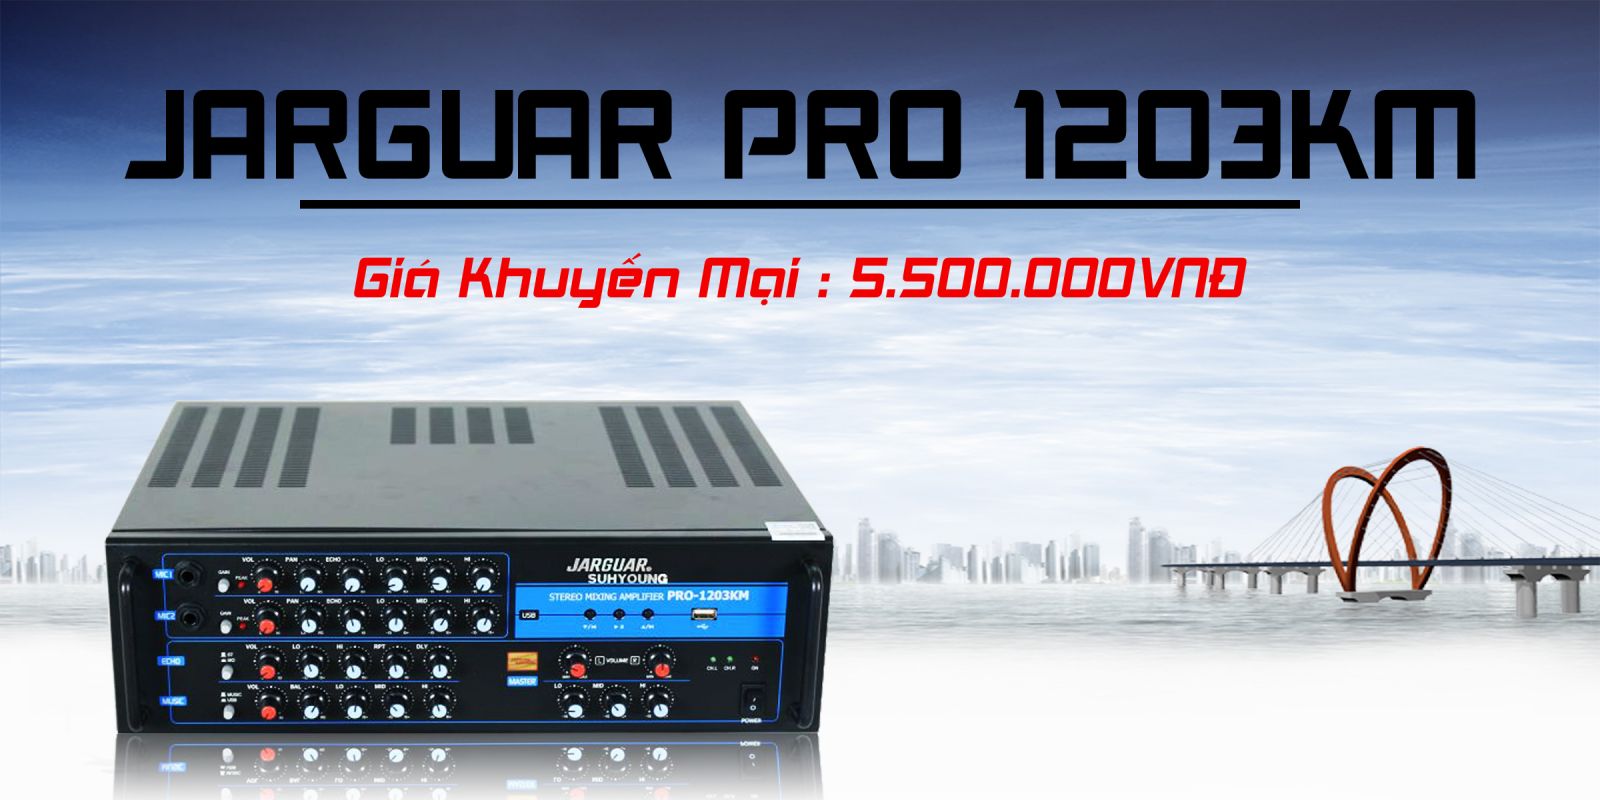 Amply Jarguar Pro 1203KM 